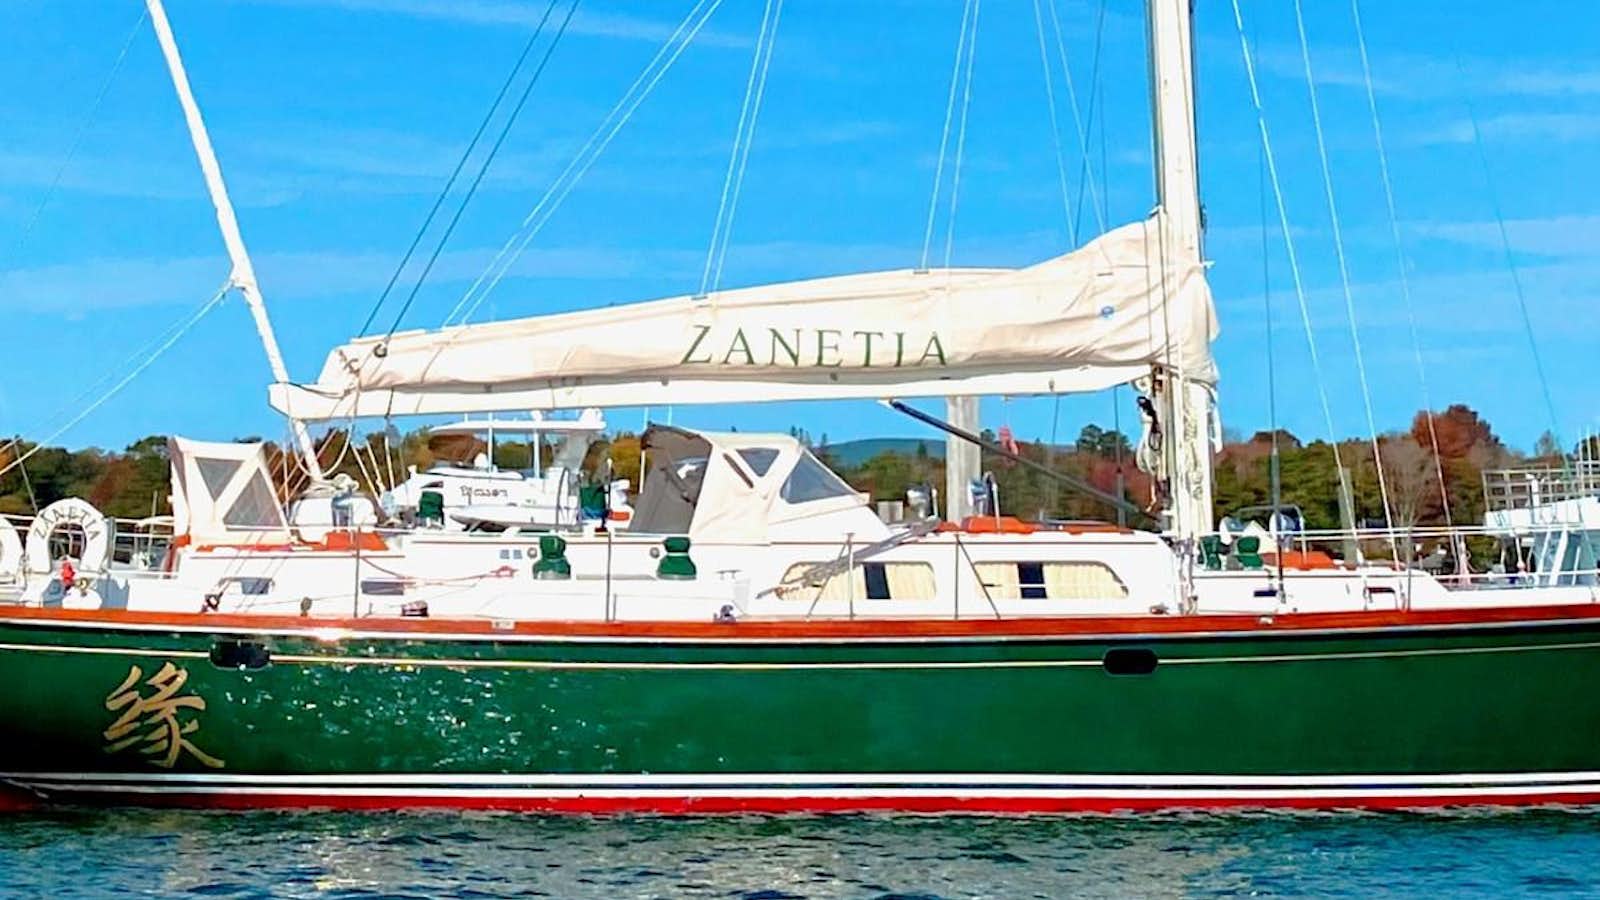 Zanetia
Yacht for Sale